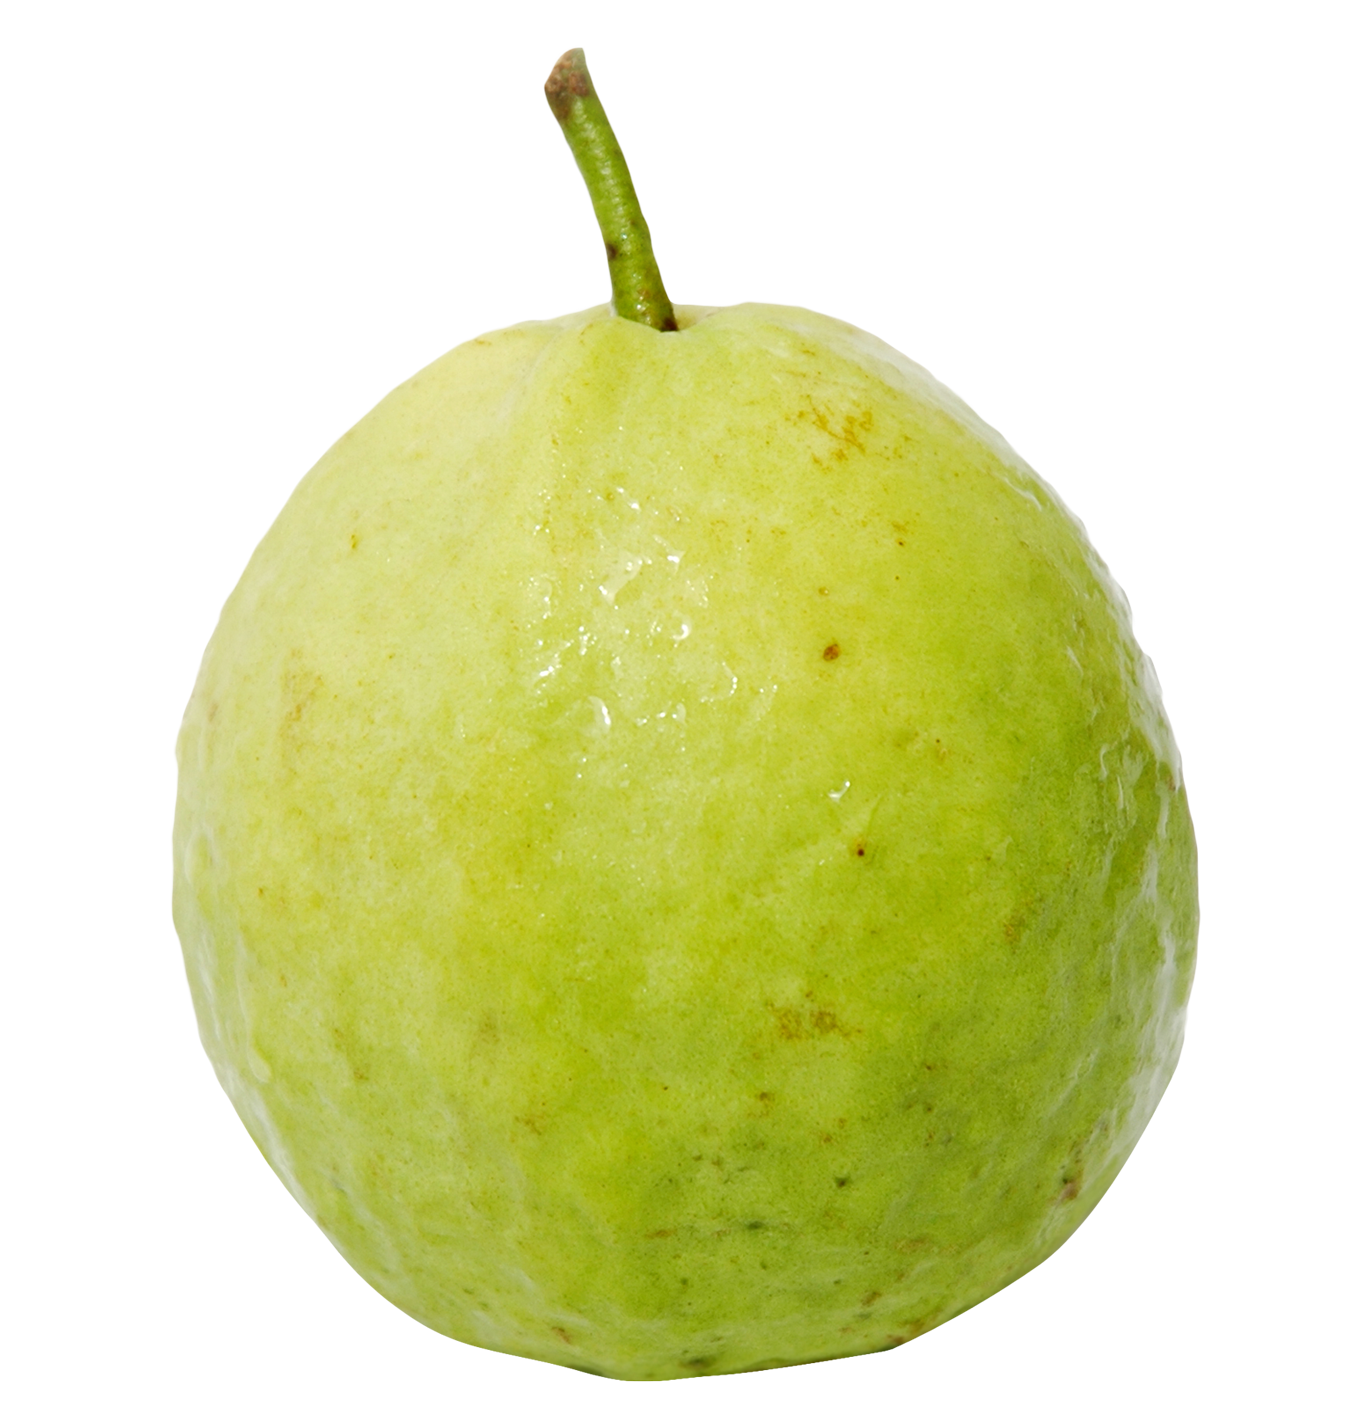 10 Health advantages of Guava